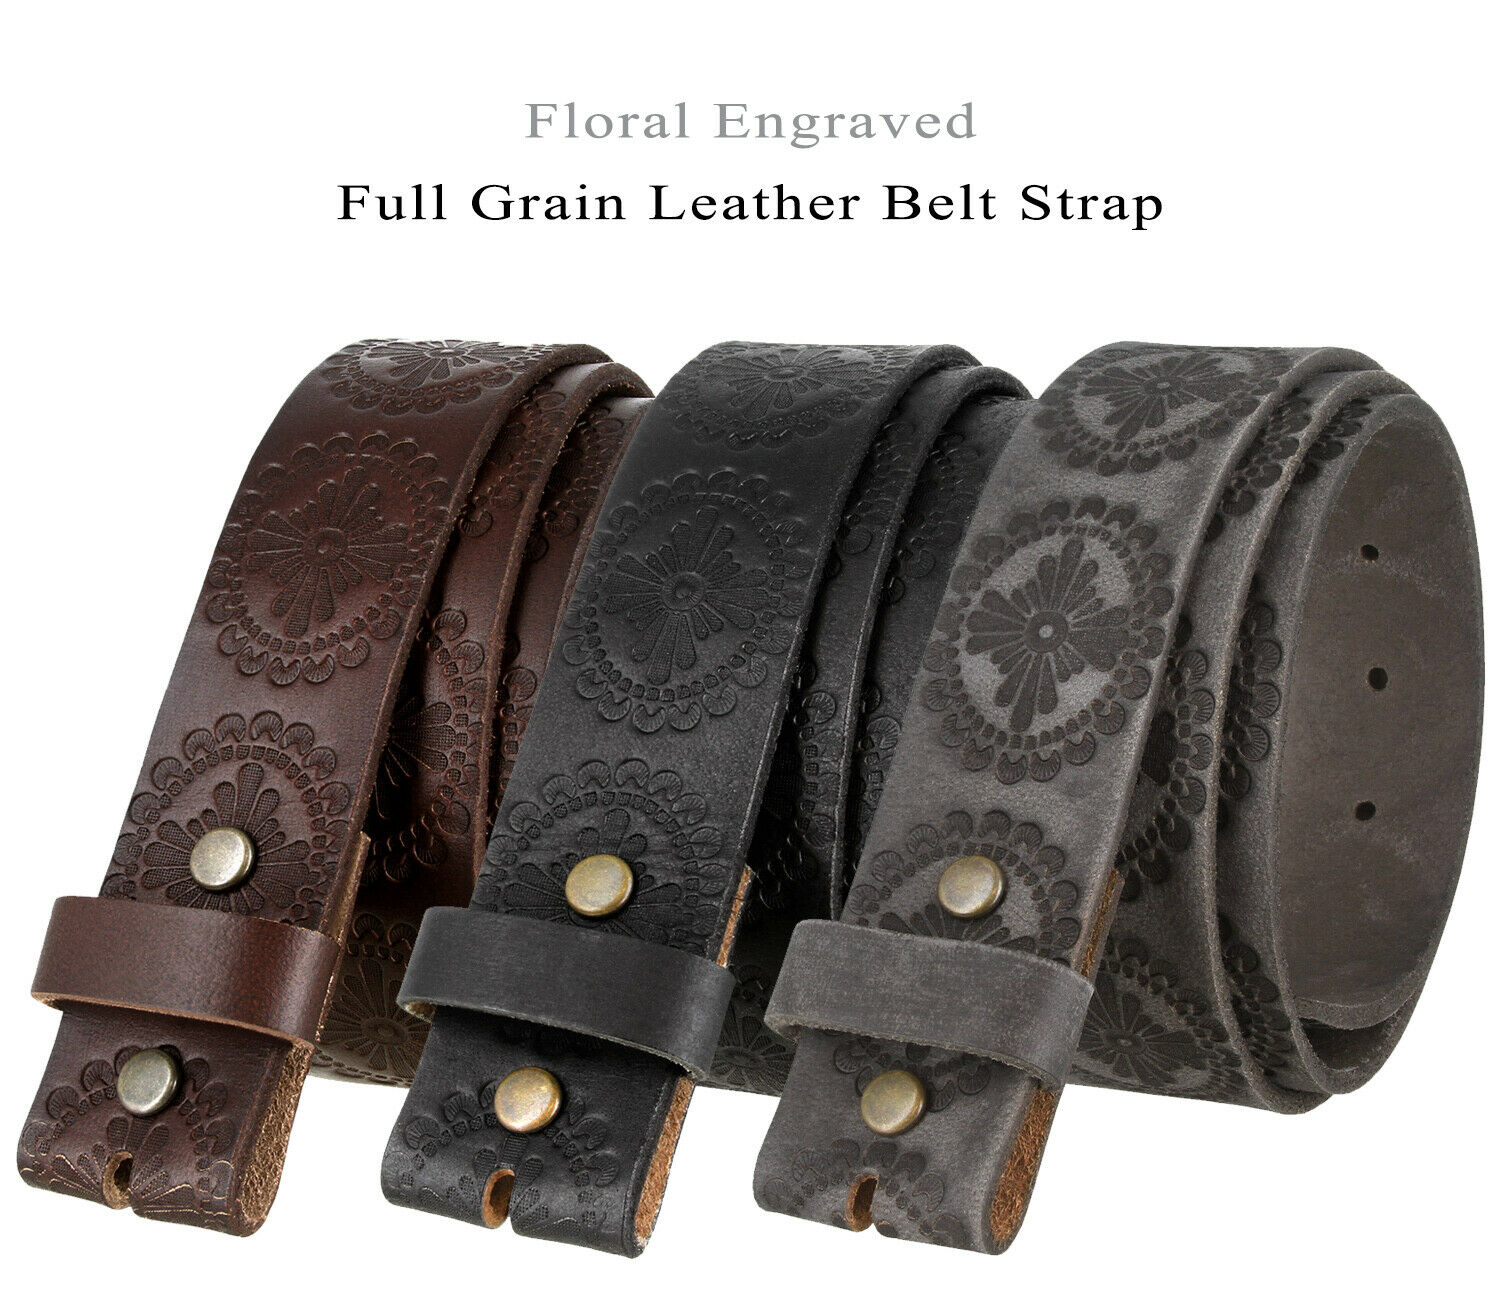 Bs70 Floral Engraved Full Grain Leather Belt Strap, 1-1/2" Wide